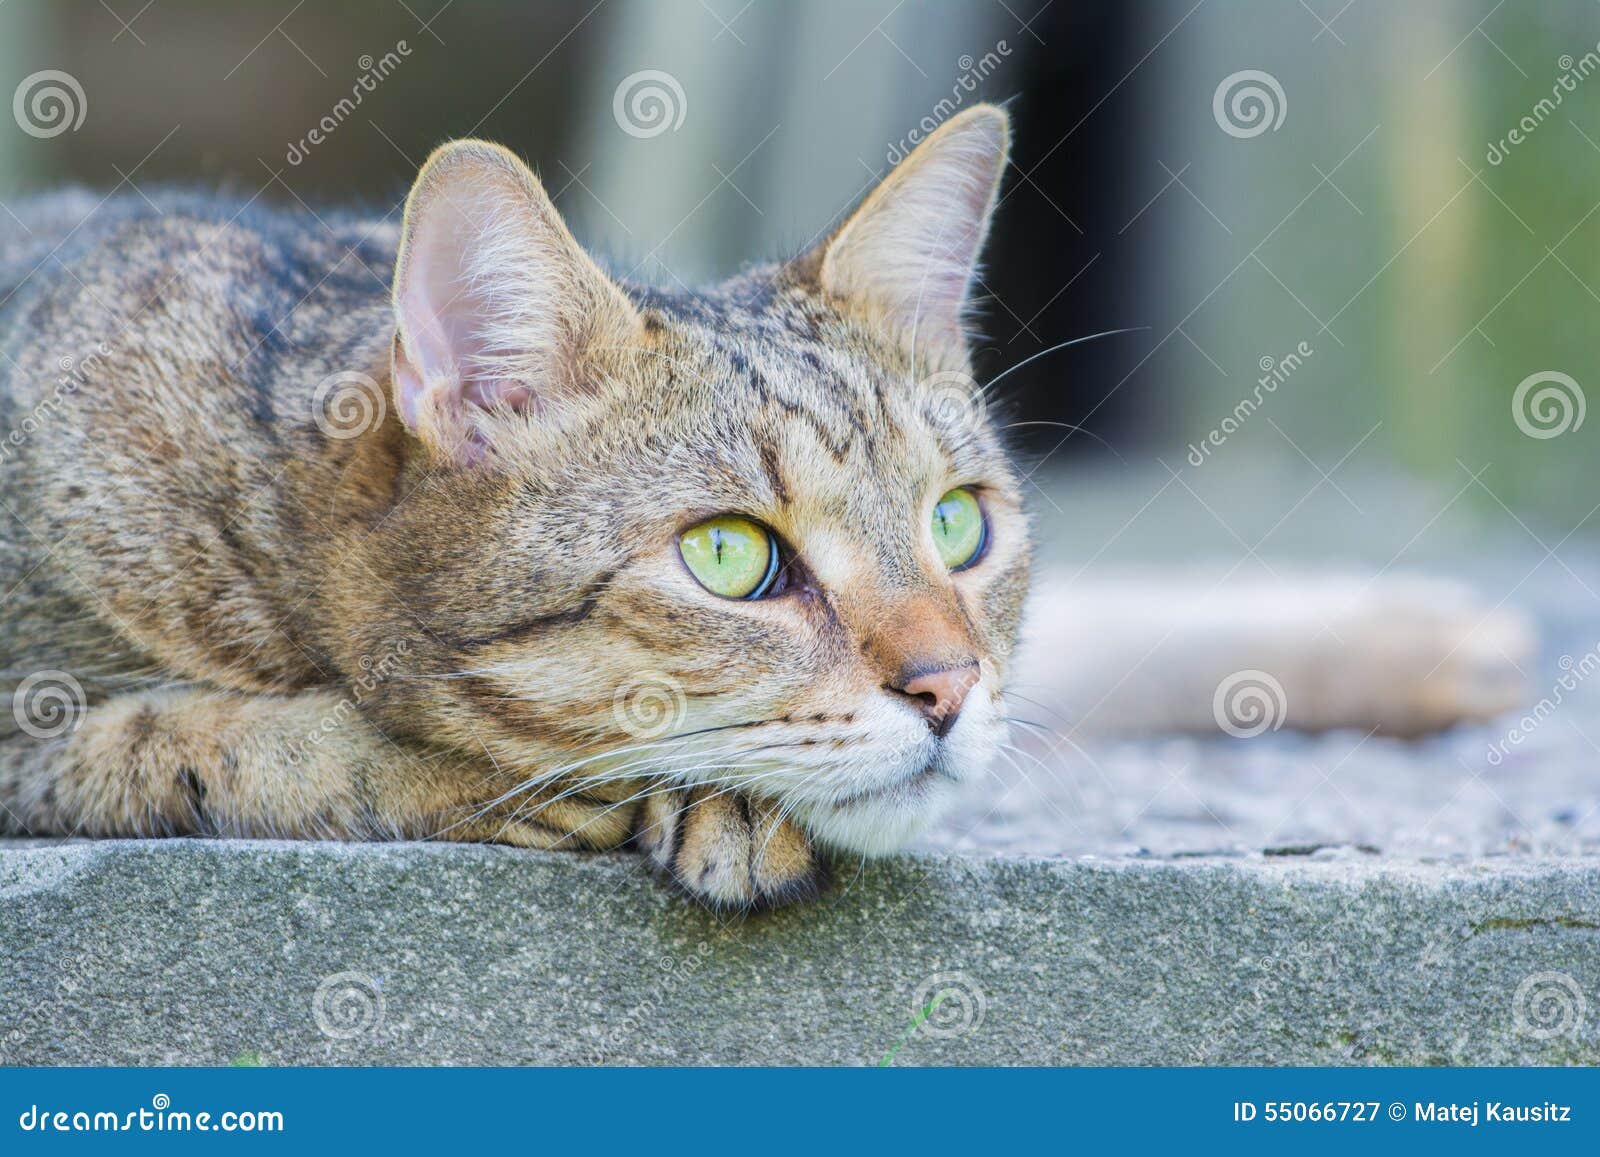 Stenditura del gatto marrone. Ponendo gatto marrone su una passeggiata laterale